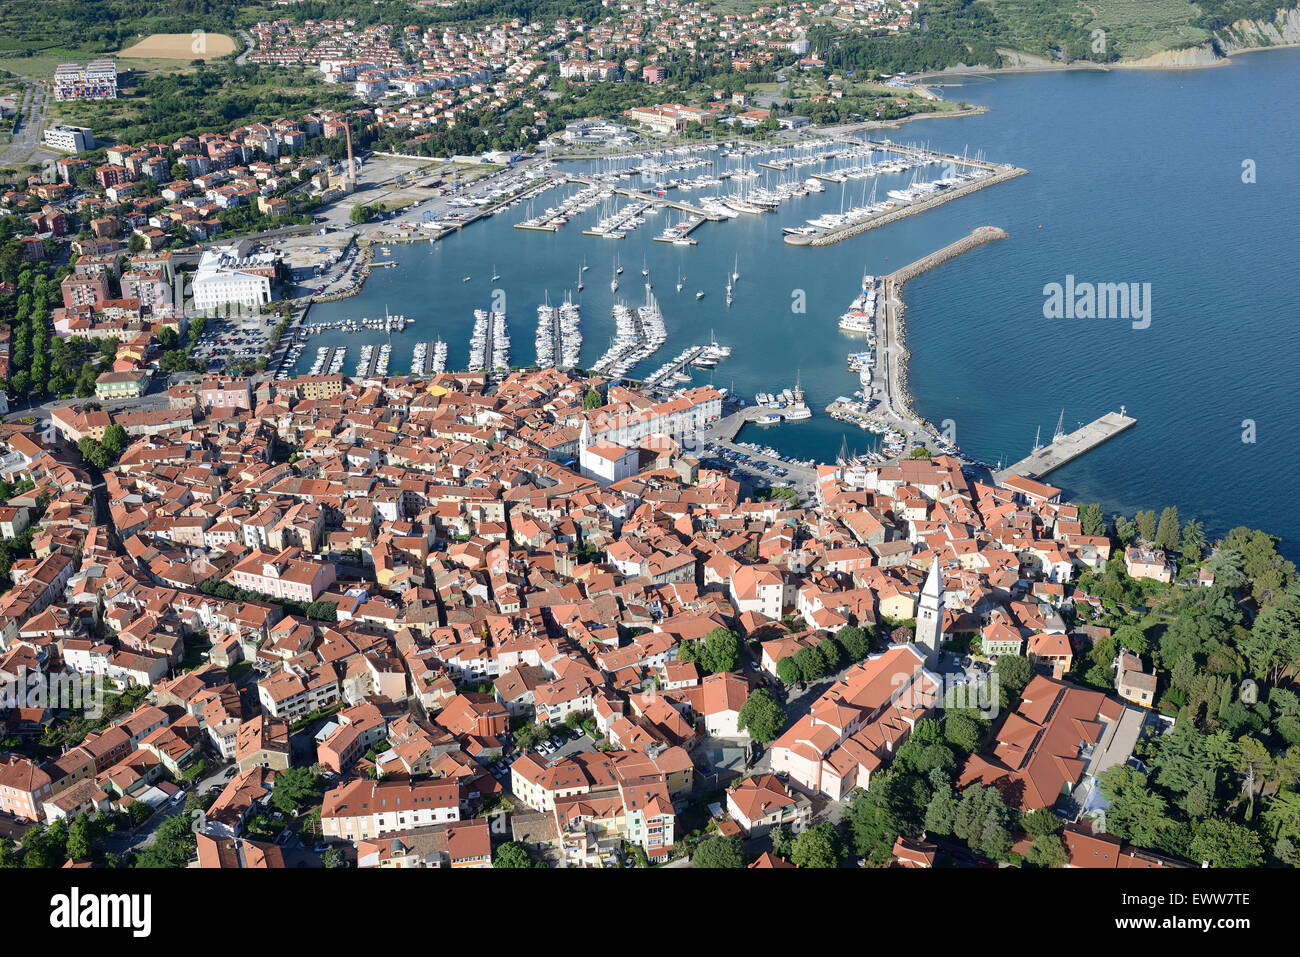 AERIAL VIEW. Marina of Izola. City of Izola (also known as Isola, its Italian name), Slovenia. Stock Photo